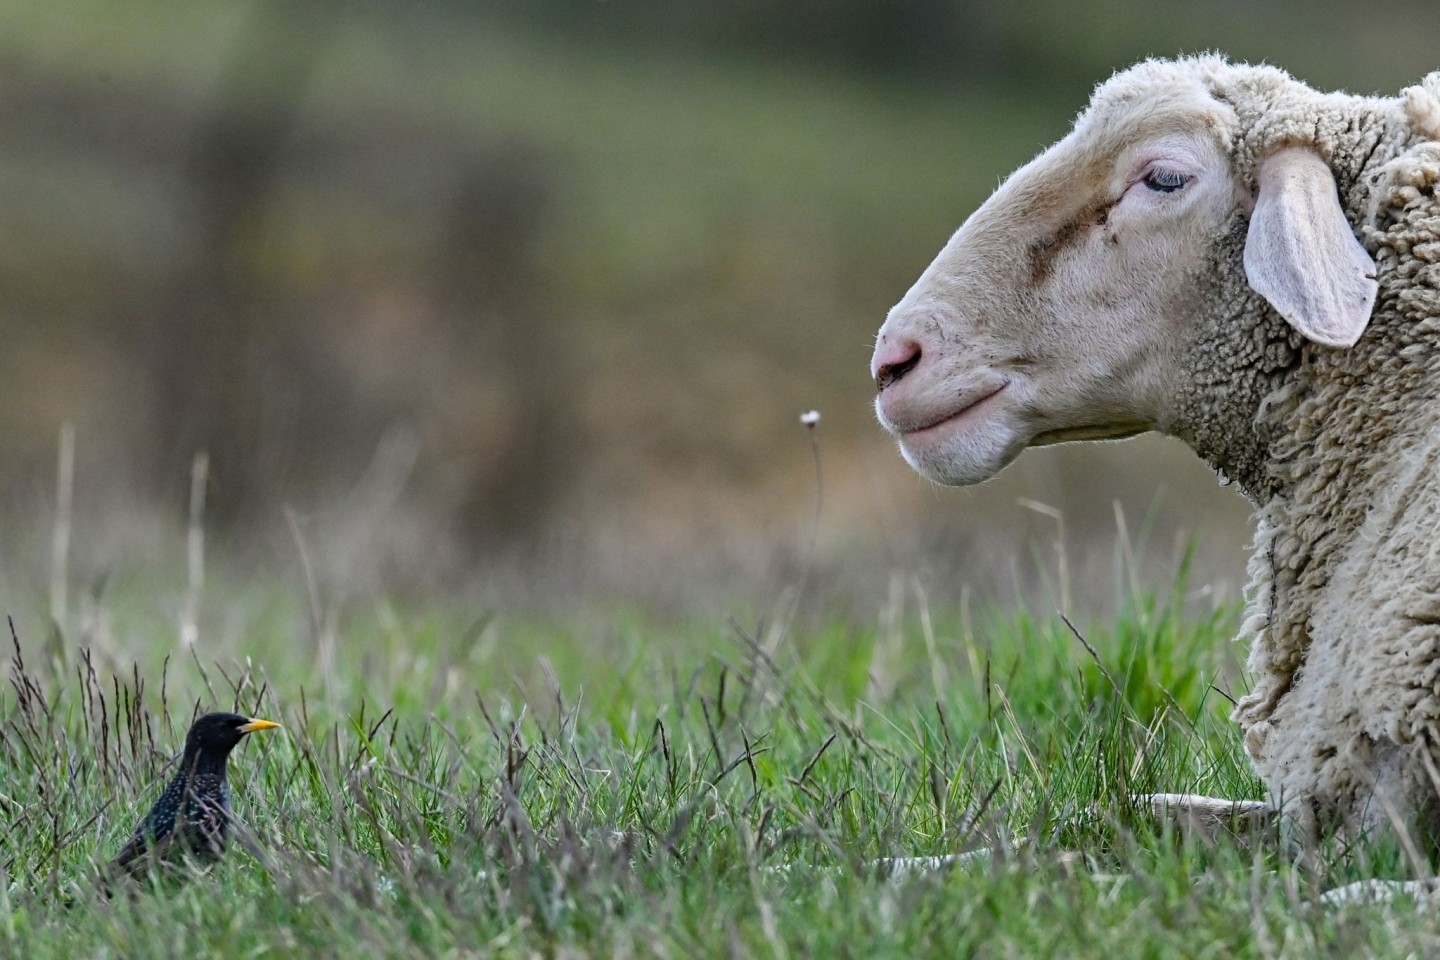 Wem das mutmaßlich trauernde Schaf gehört, ist bislang nicht geklärt - vorerst hat es Unterschlupf auf einem Hof gefunden. (Symbolbild)